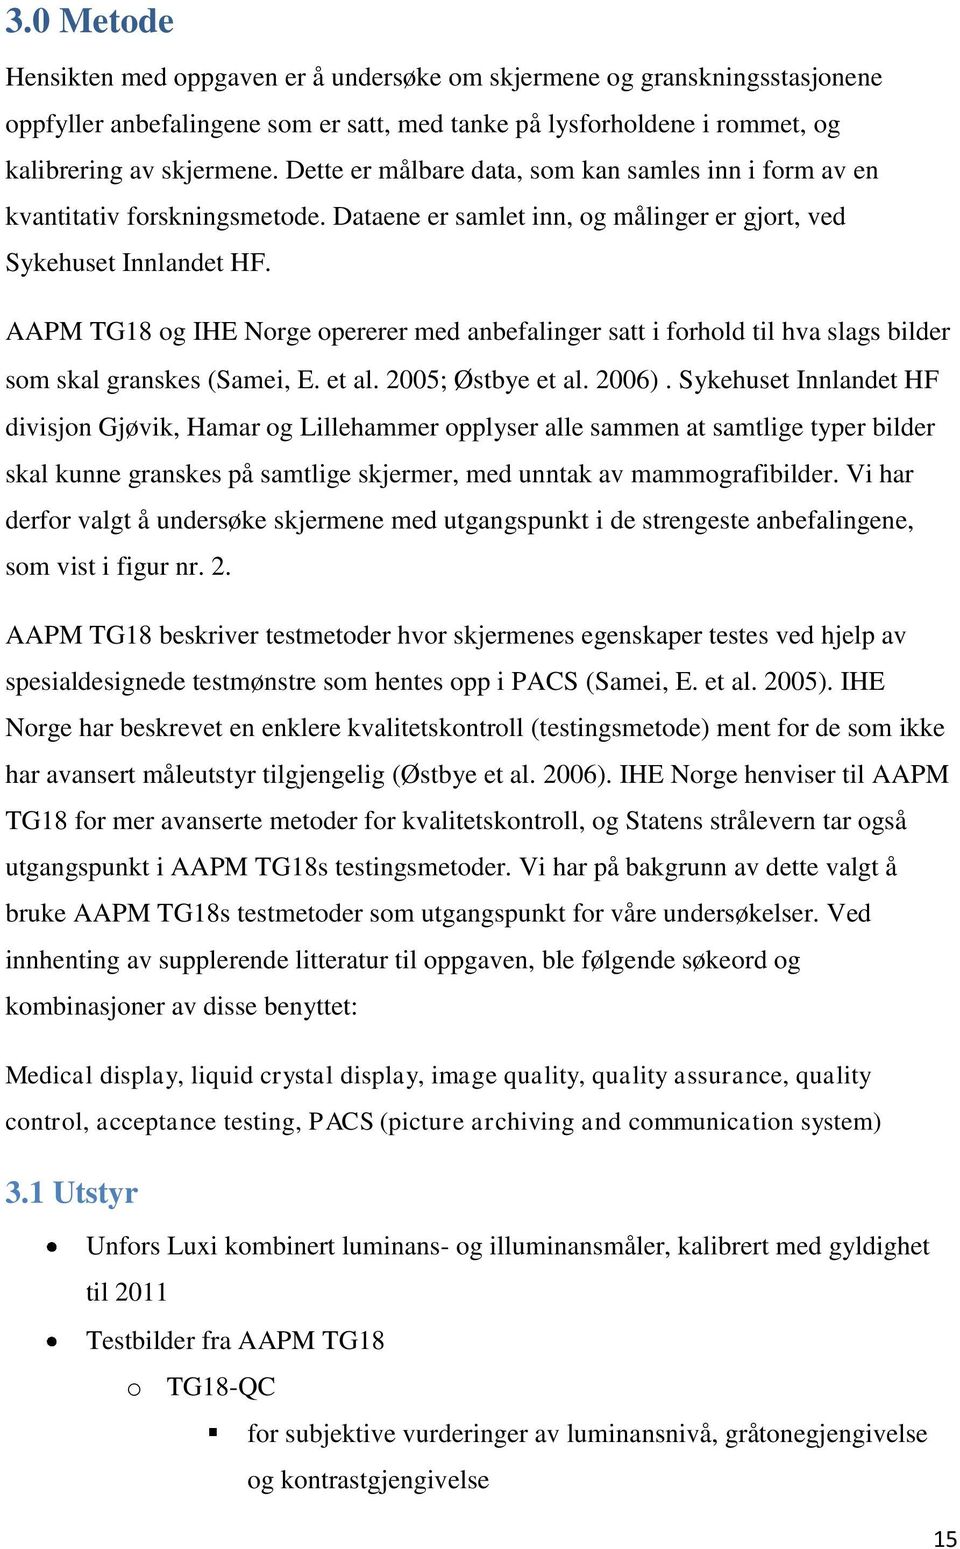 AAPM TG18 og IHE Norge opererer med anbefalinger satt i forhold til hva slags bilder som skal granskes (Samei, E. et al. 2005; Østbye et al. 2006).